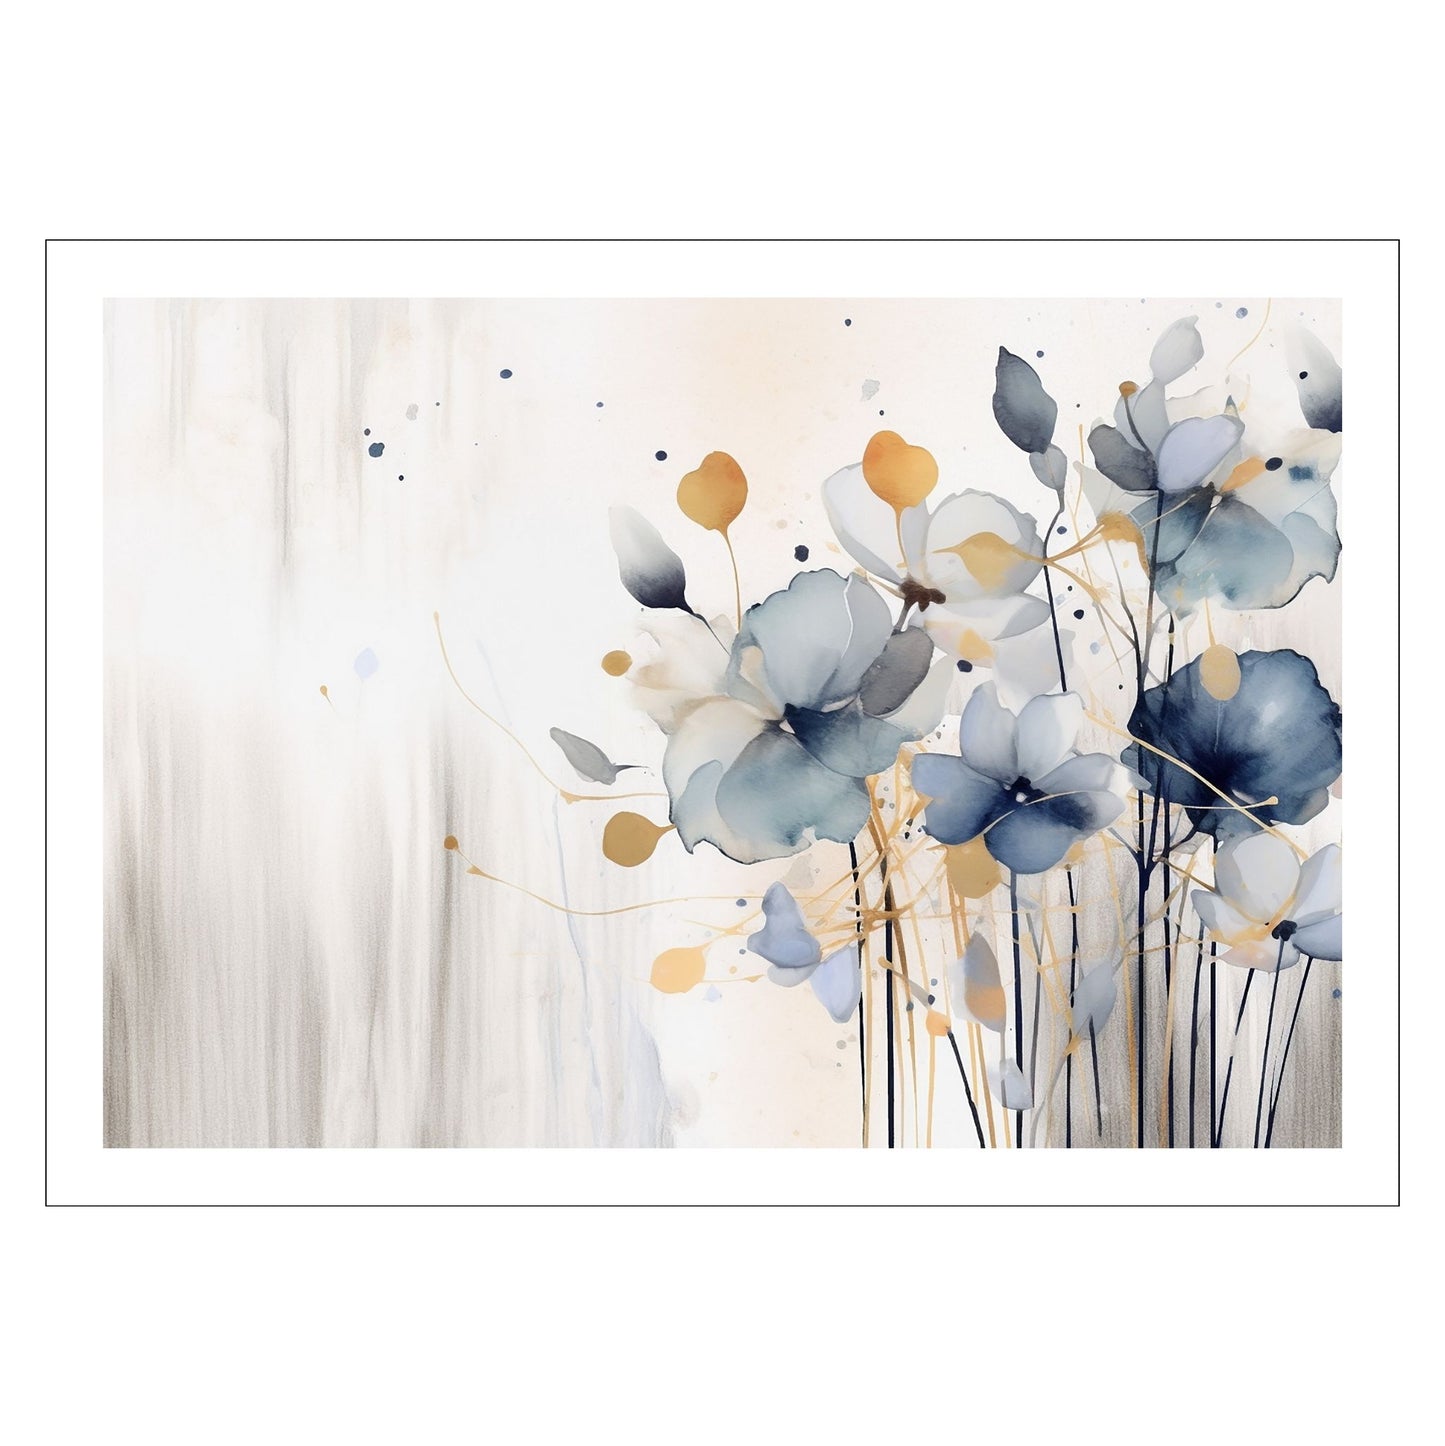 Abstract Floral No4. Grafisk akvarell i duse fargenyanser i rust, blått og beige. Plakaten har en hvit, dekorativ kant. 